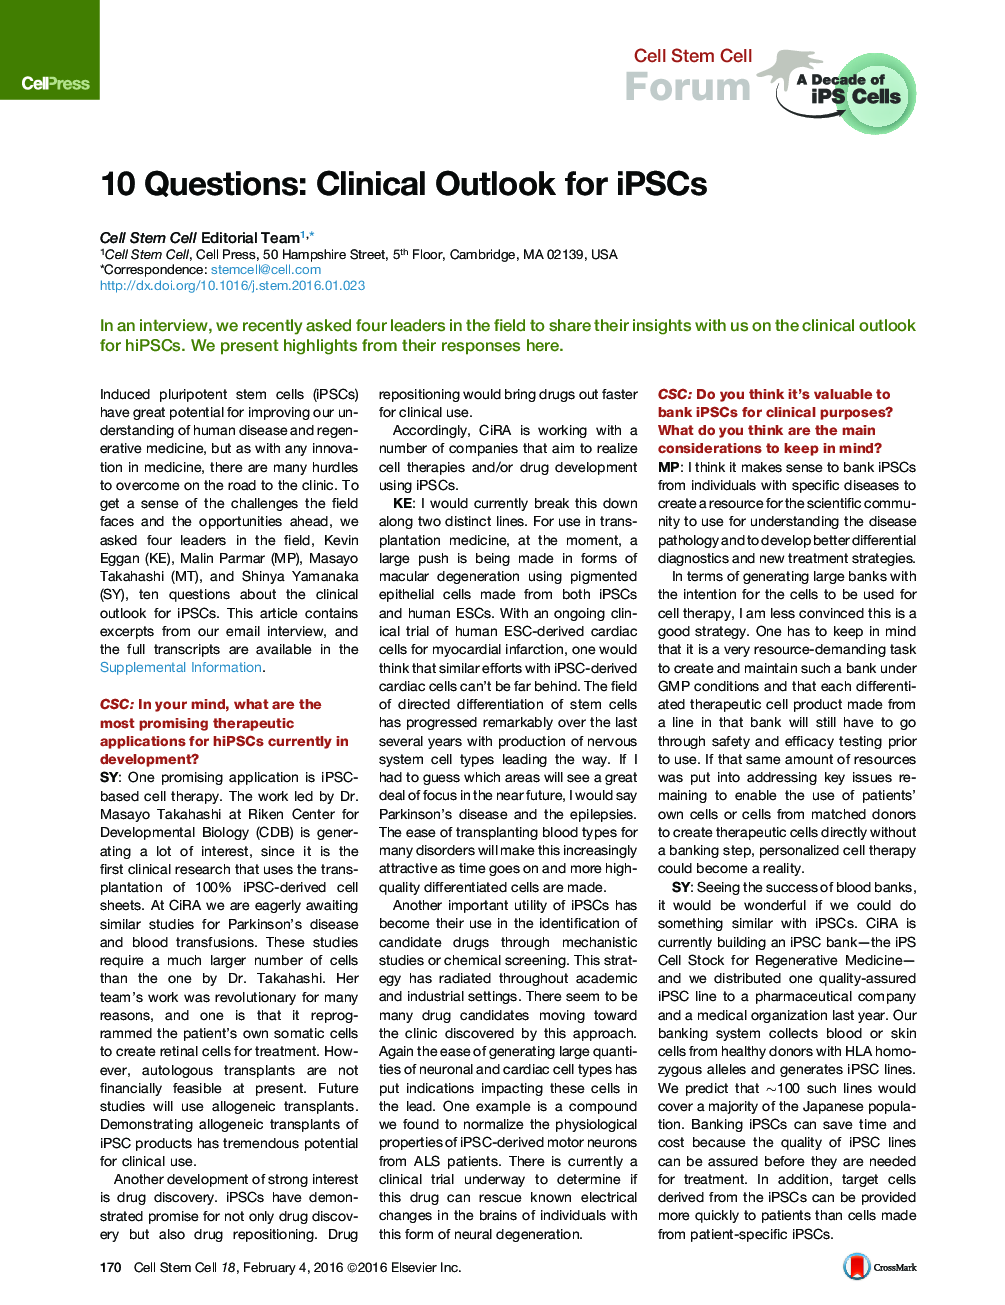 10 پرسش: چشم انداز بالینی برای iPSCs